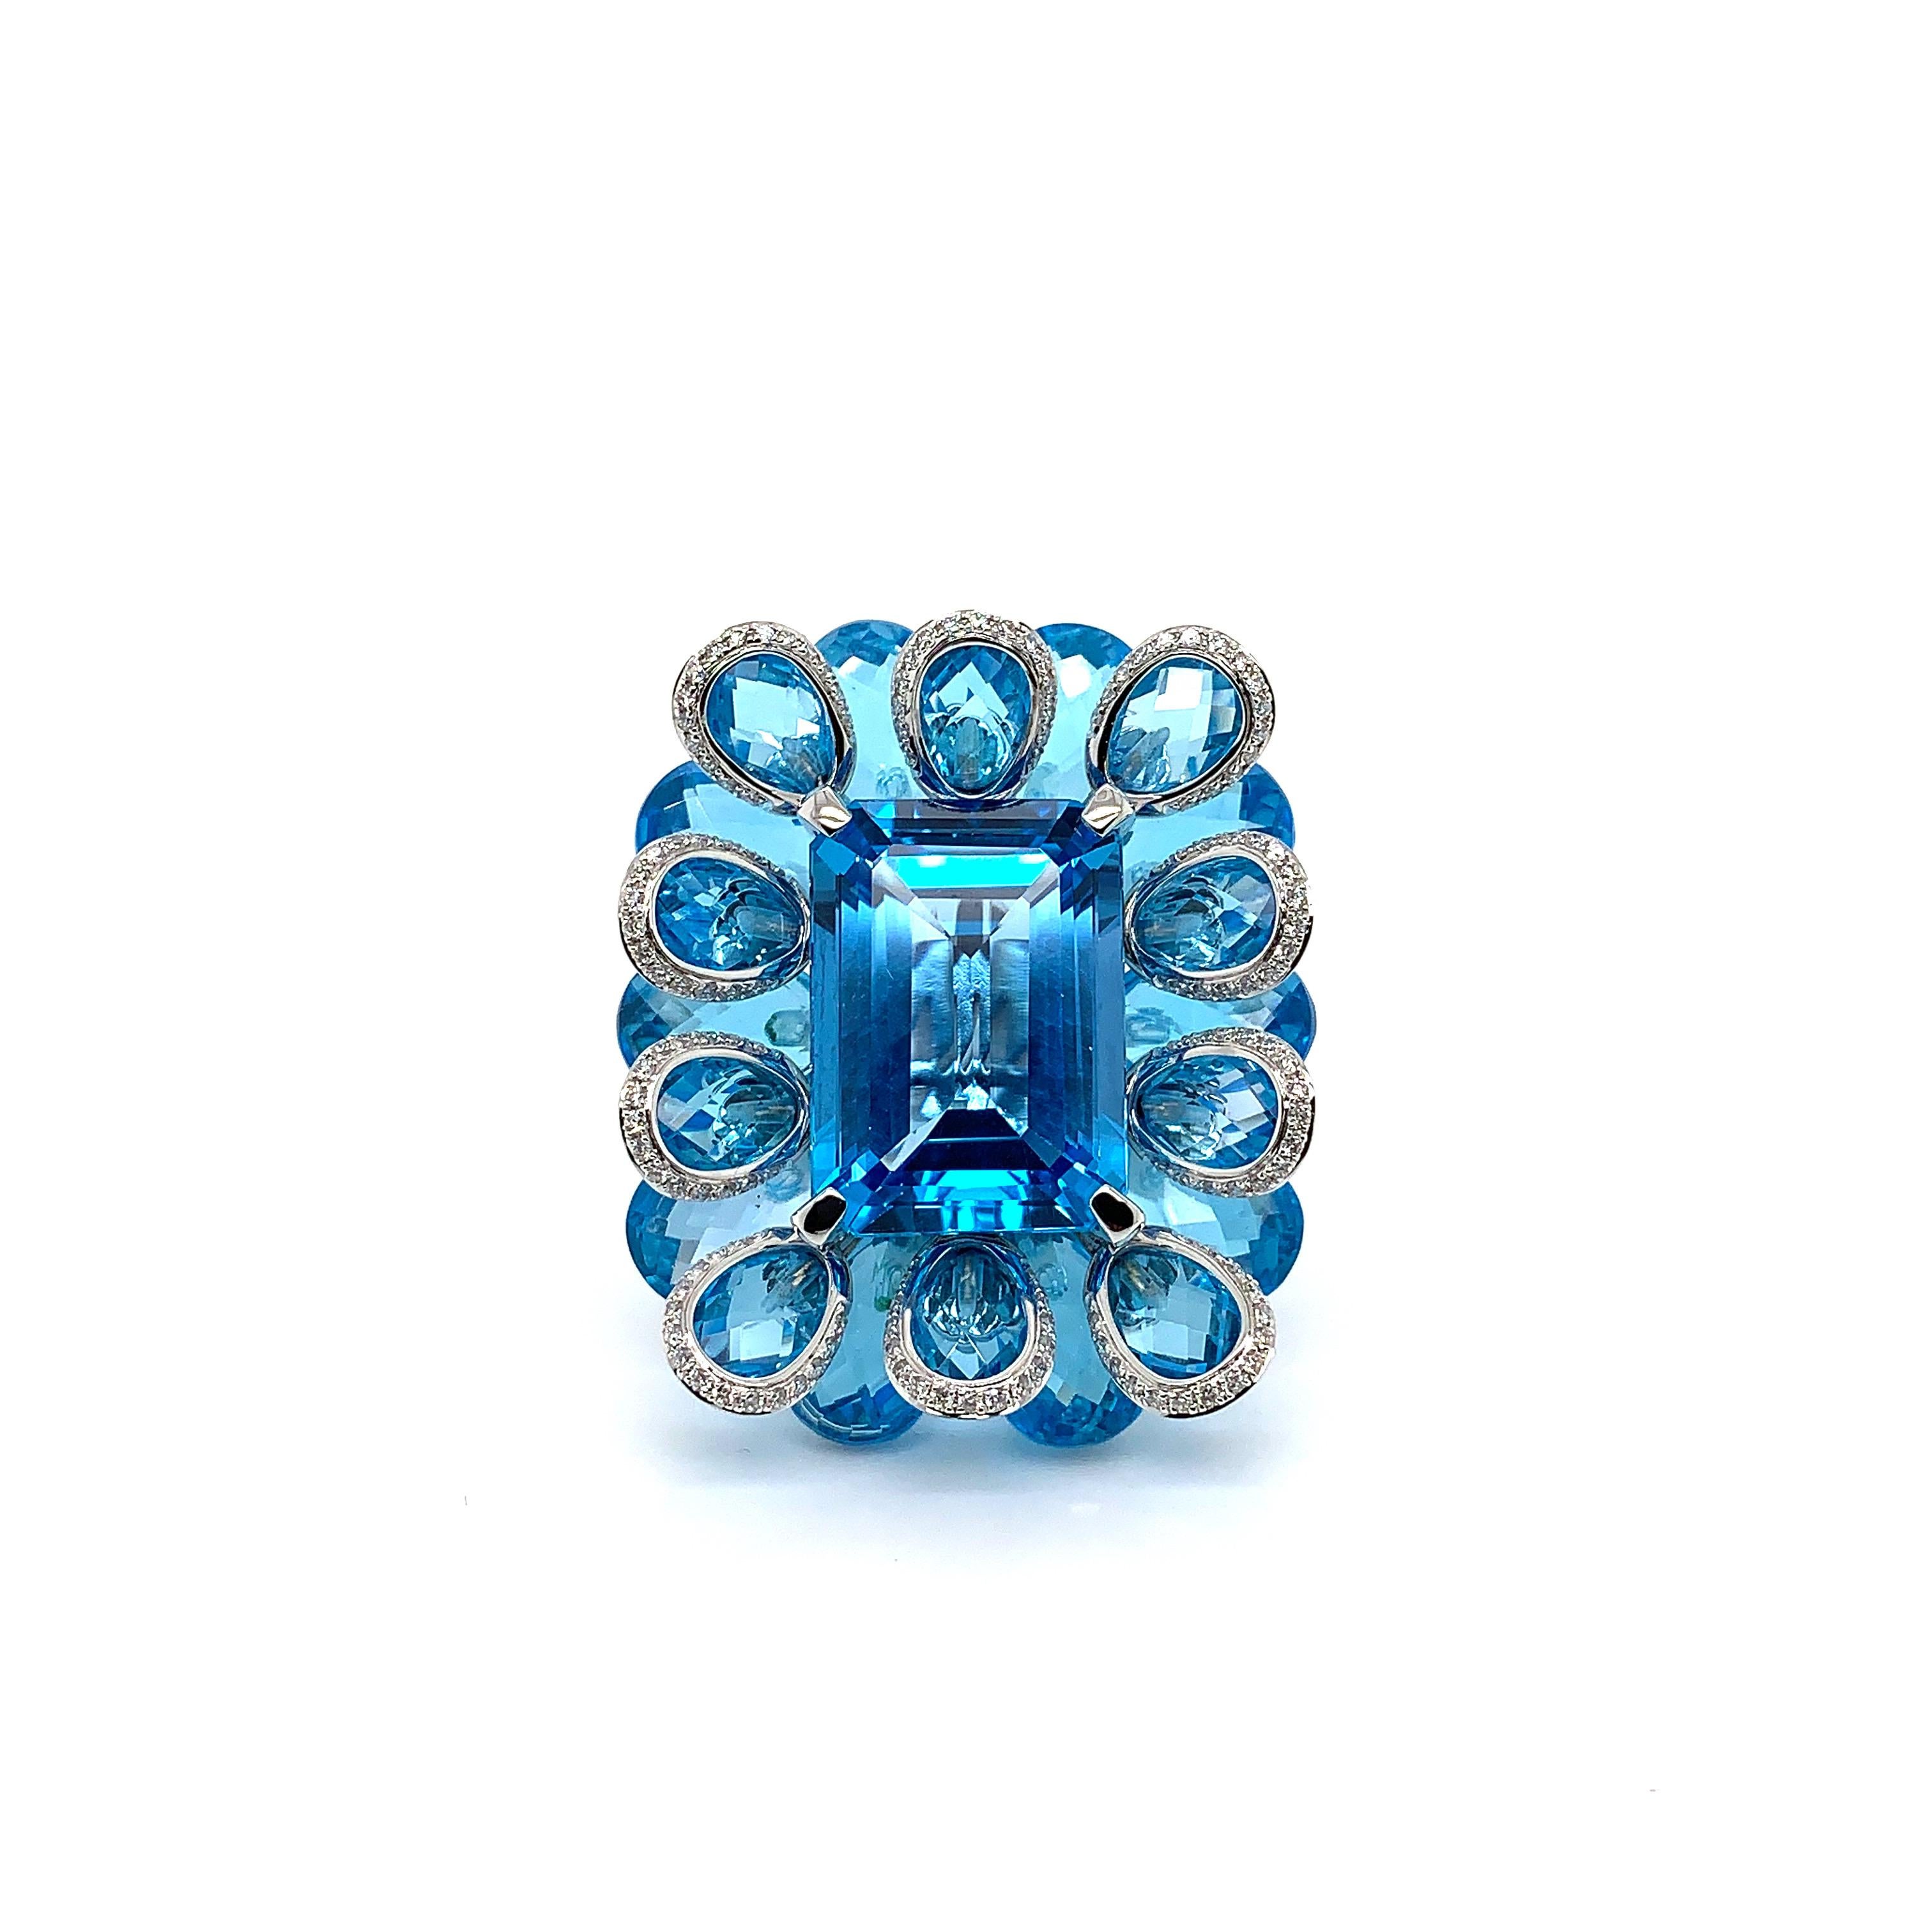 Dieser Ring hat einen exquisiten Blautopas von 21,51 Karat als Mittelstein. Dieser wunderschöne Edelstein liegt auf einem Bett aus üppigen blauen Topasbrioletten, um den friedlichen Farbton der Edelsteine hervorzuheben. Die architektonische